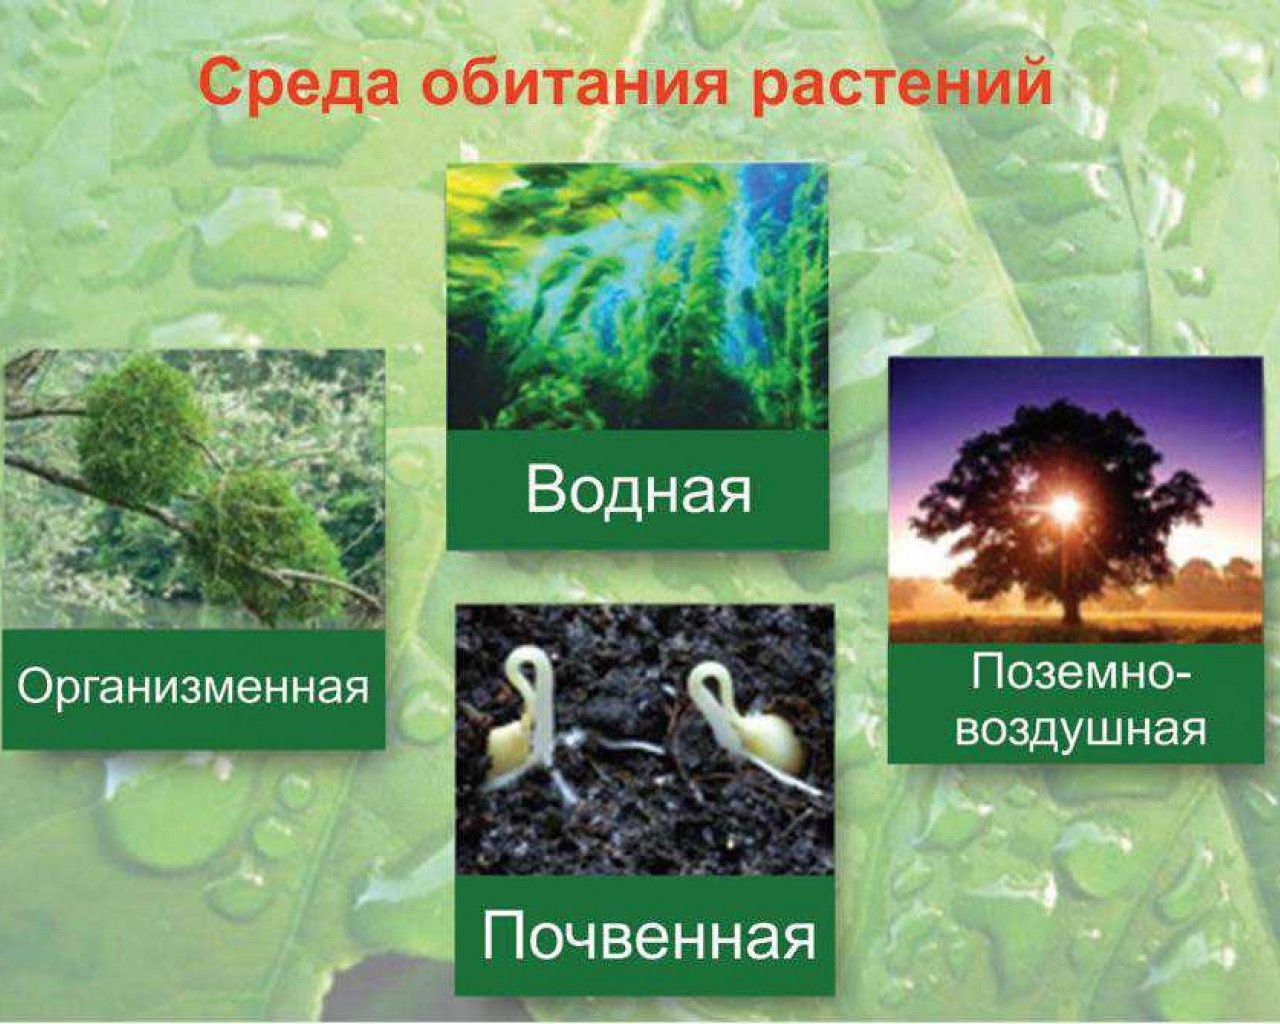 Среда обитания капусты. Среда обитания растений. Условия обитания растений. Условия среды обитания растений. Растения разных сред обитания.